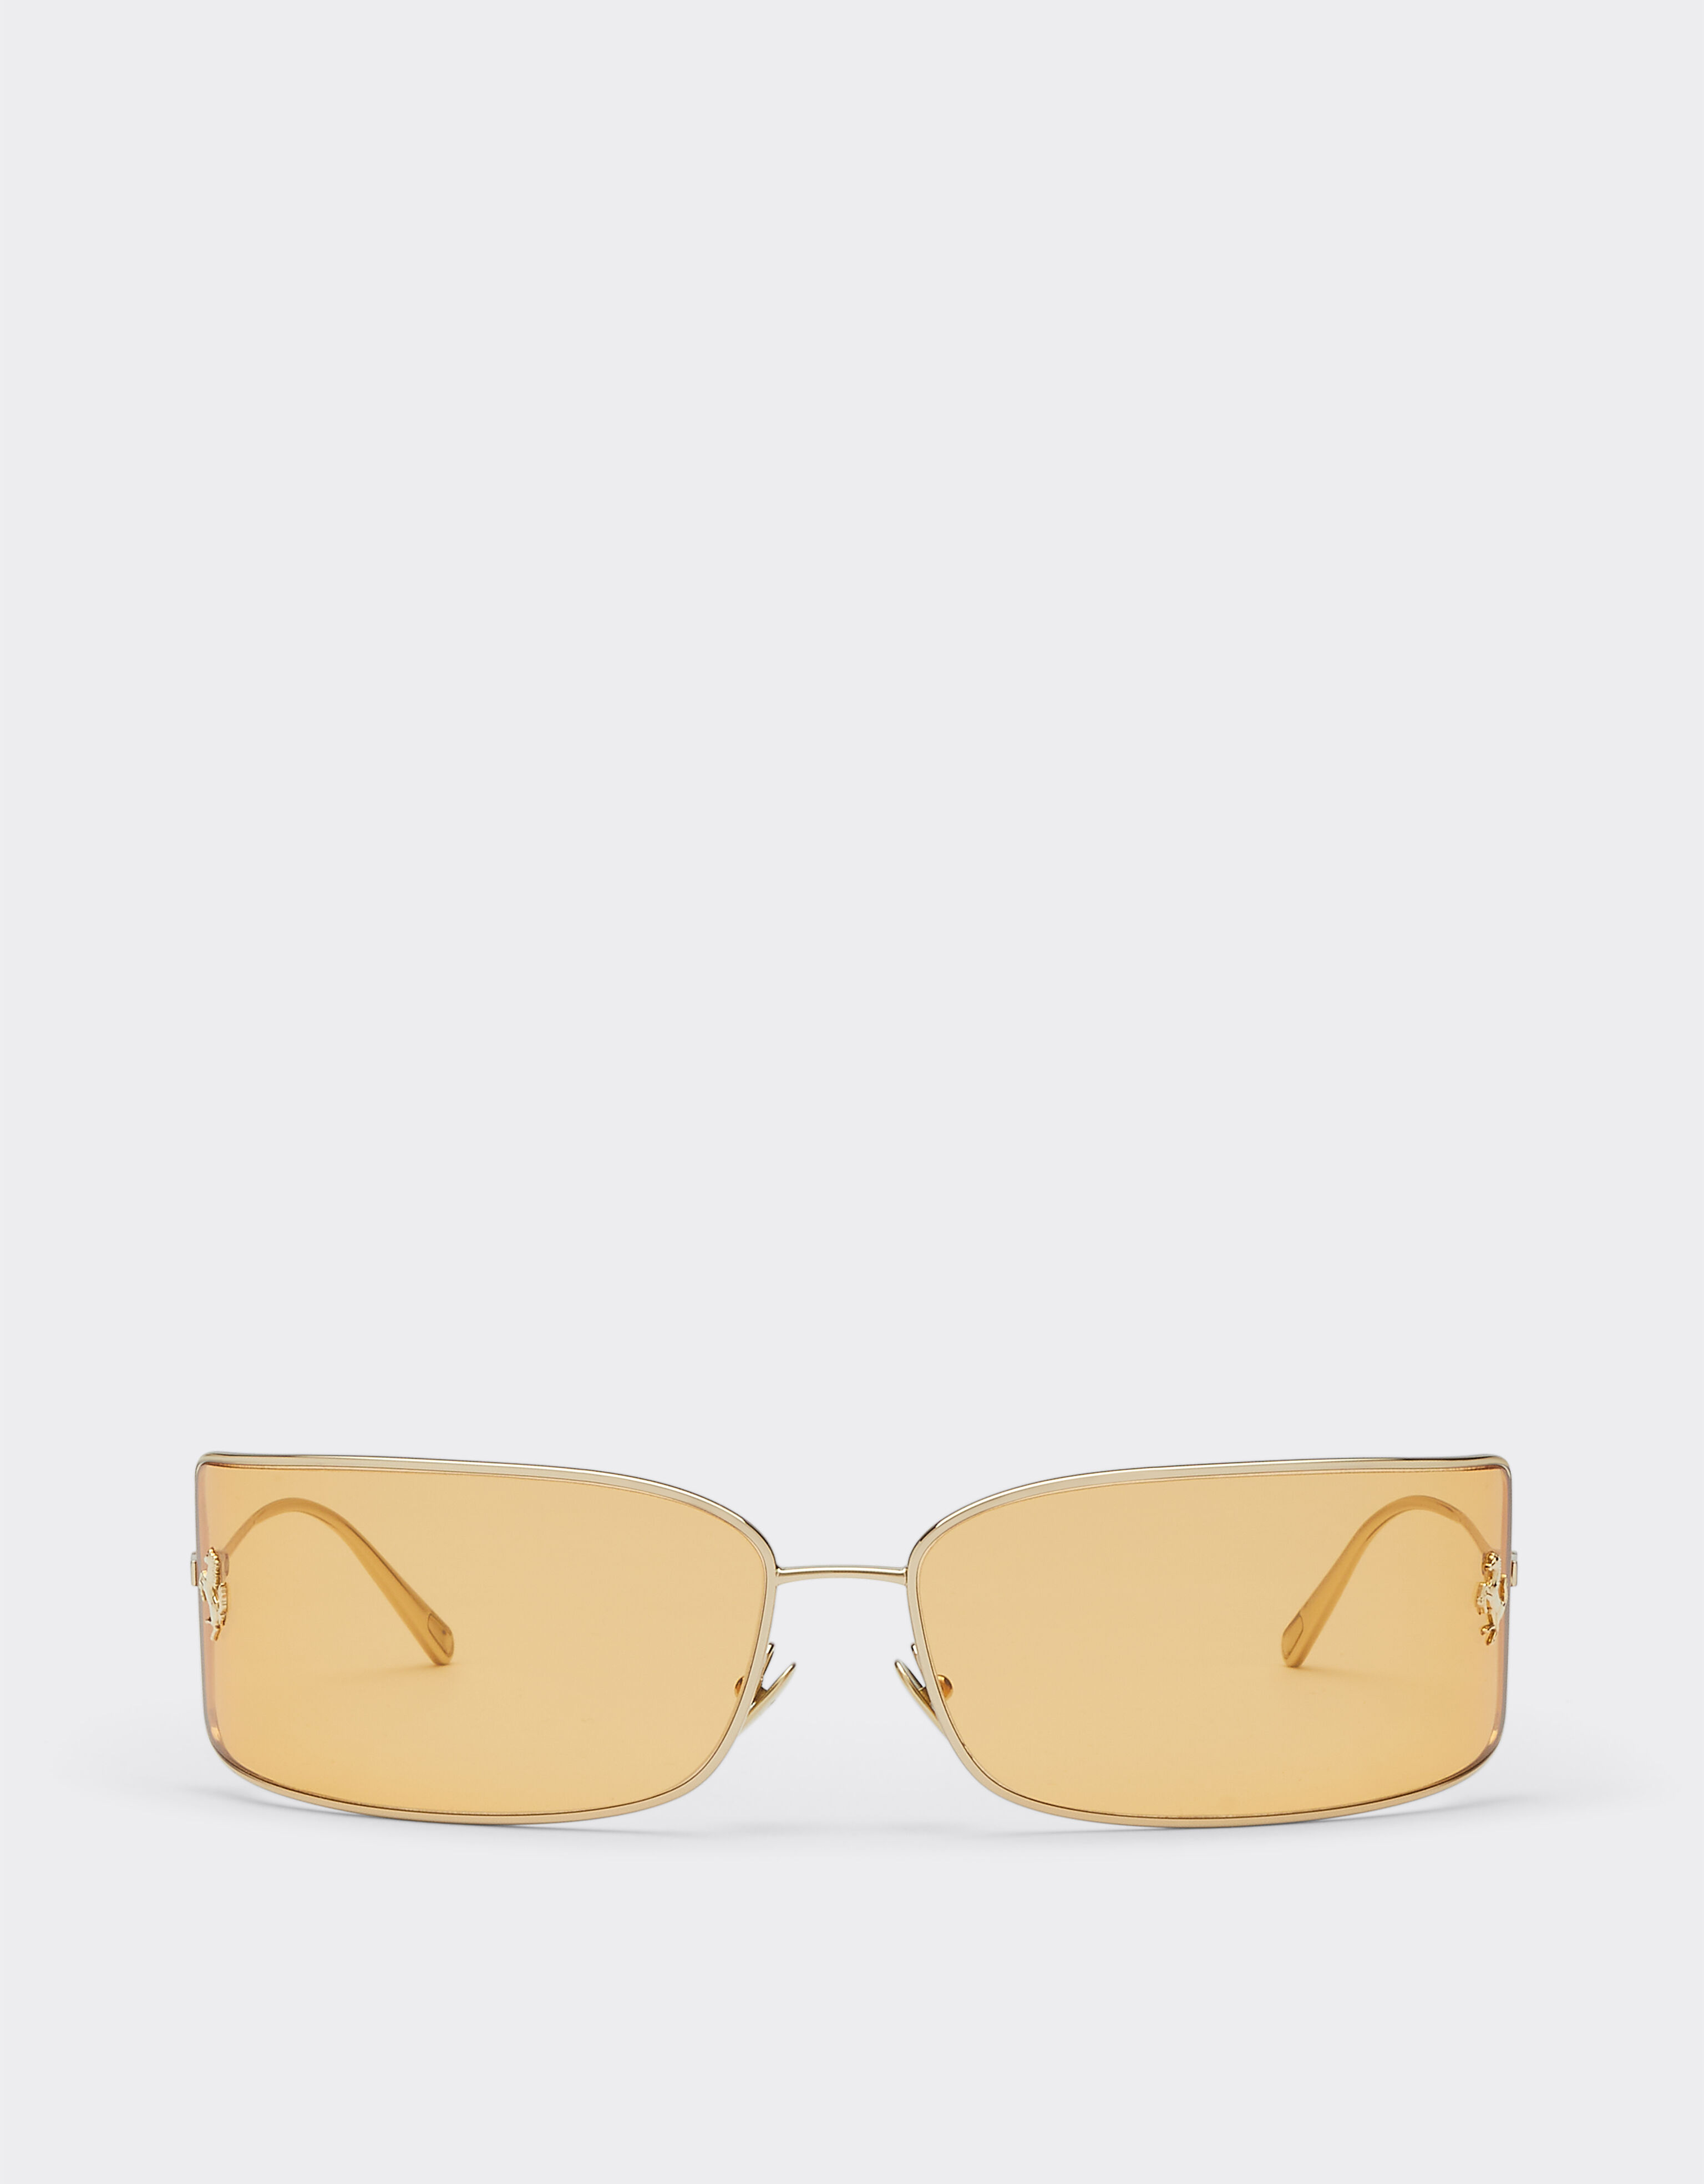 Ferrari Ferrari shield sunglasses with gold lenses Silver F1248f